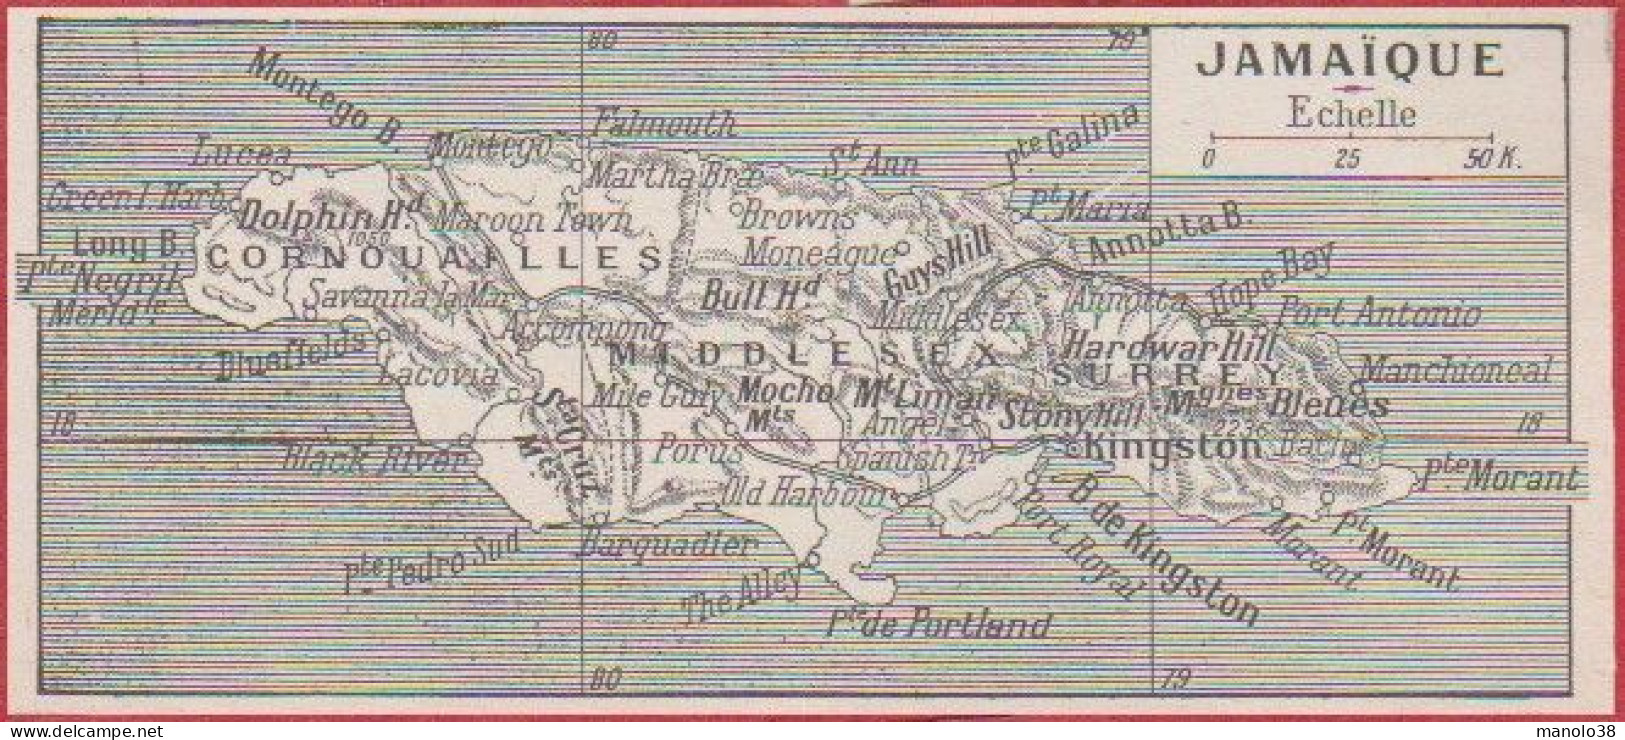 Carte De L'île De Jamaïque. Larousse 1948. - Historical Documents